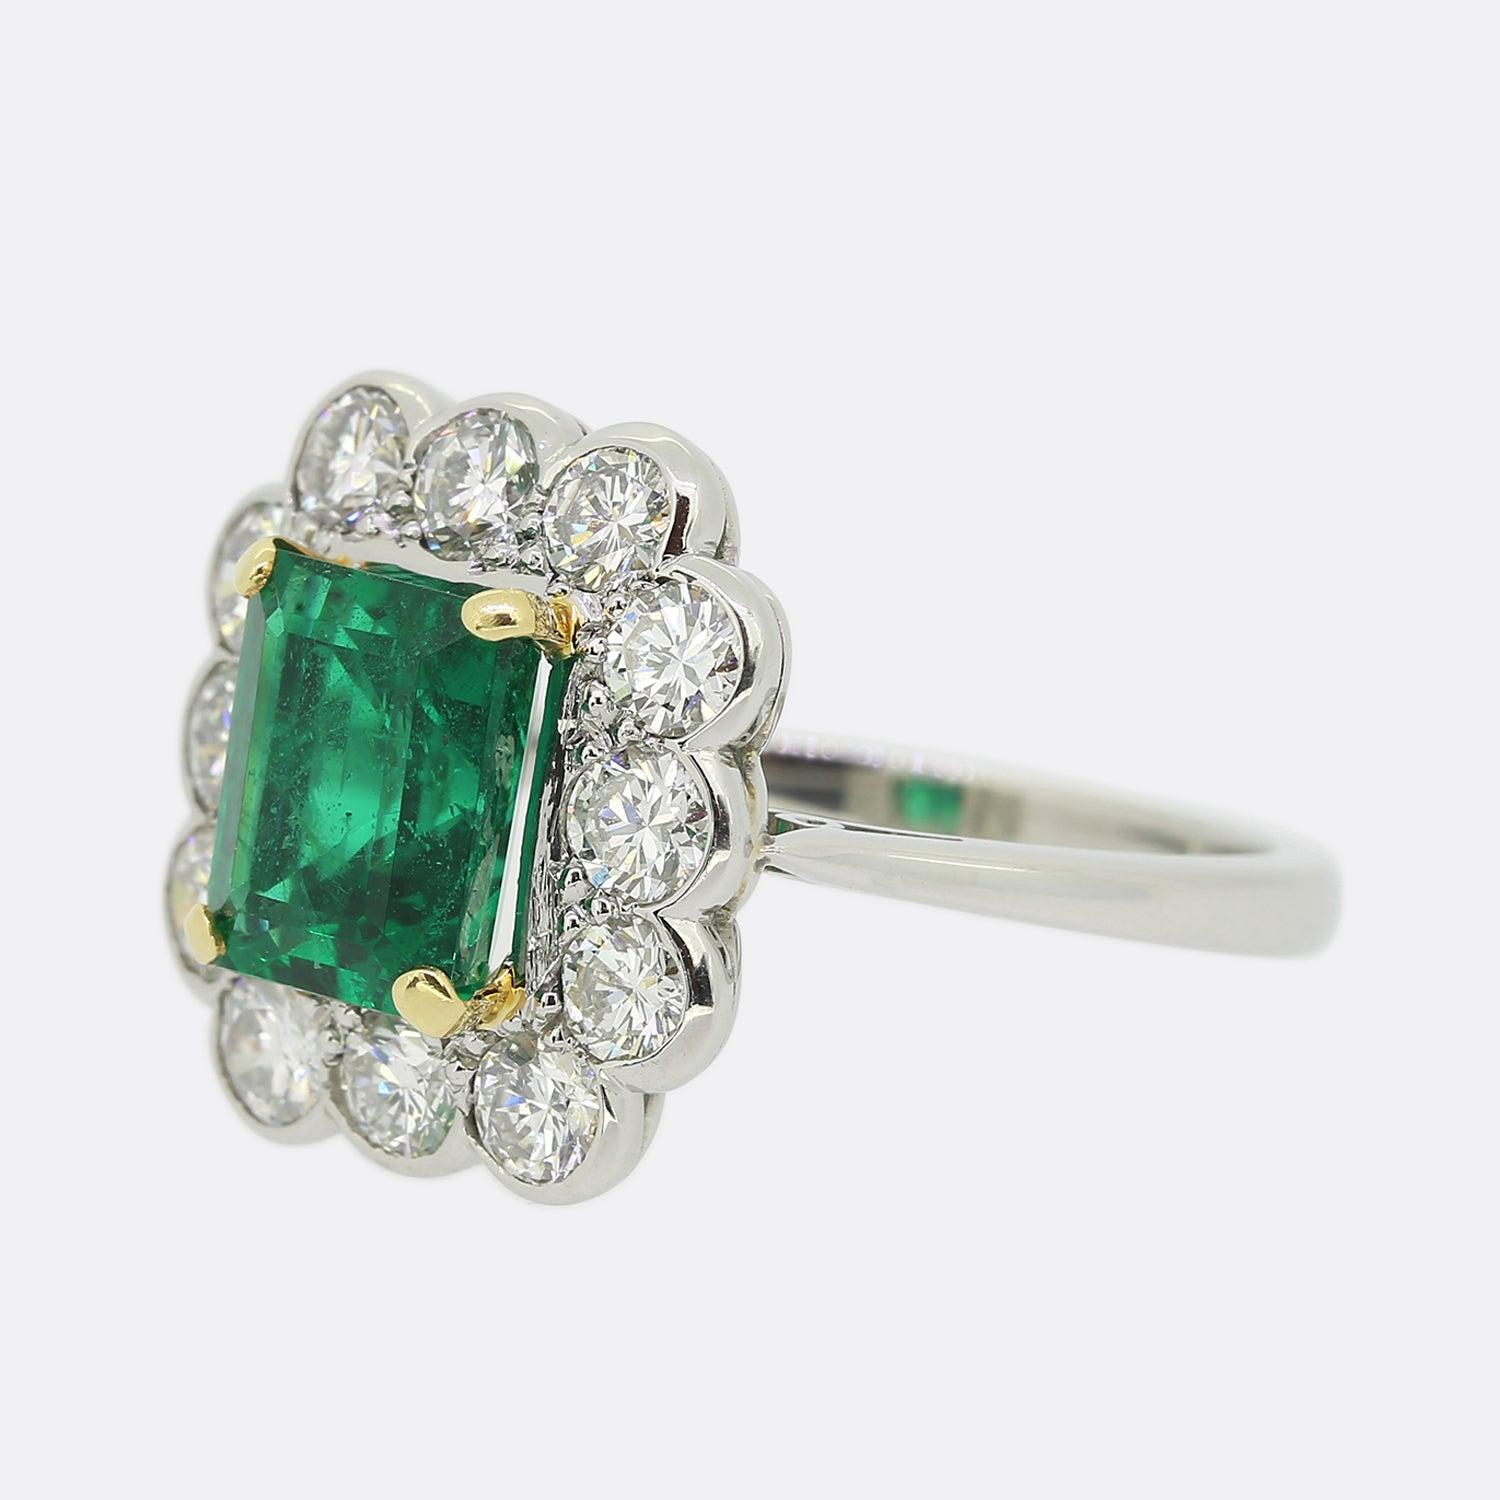 Dies ist ein wunderbarer Smaragd und Diamant-Cluster-Ring. In der Mitte des Rings befindet sich ein sambischer Smaragd im Smaragdschliff, der einen wunderschönen, intensiven Grünton hat, der durch die strahlend weißen, runden Diamanten im